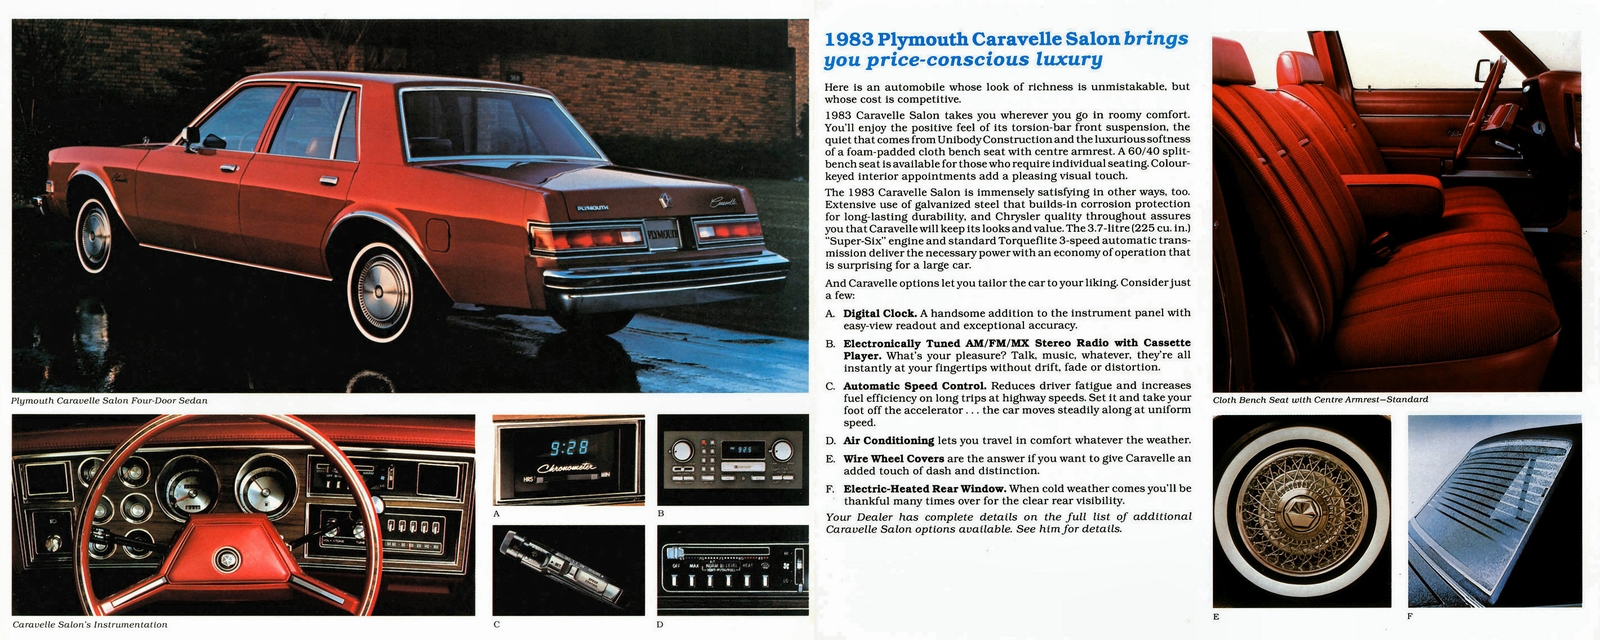 n_1983 Plymouth Caravelle Salon (Cdn)-02-03.jpg